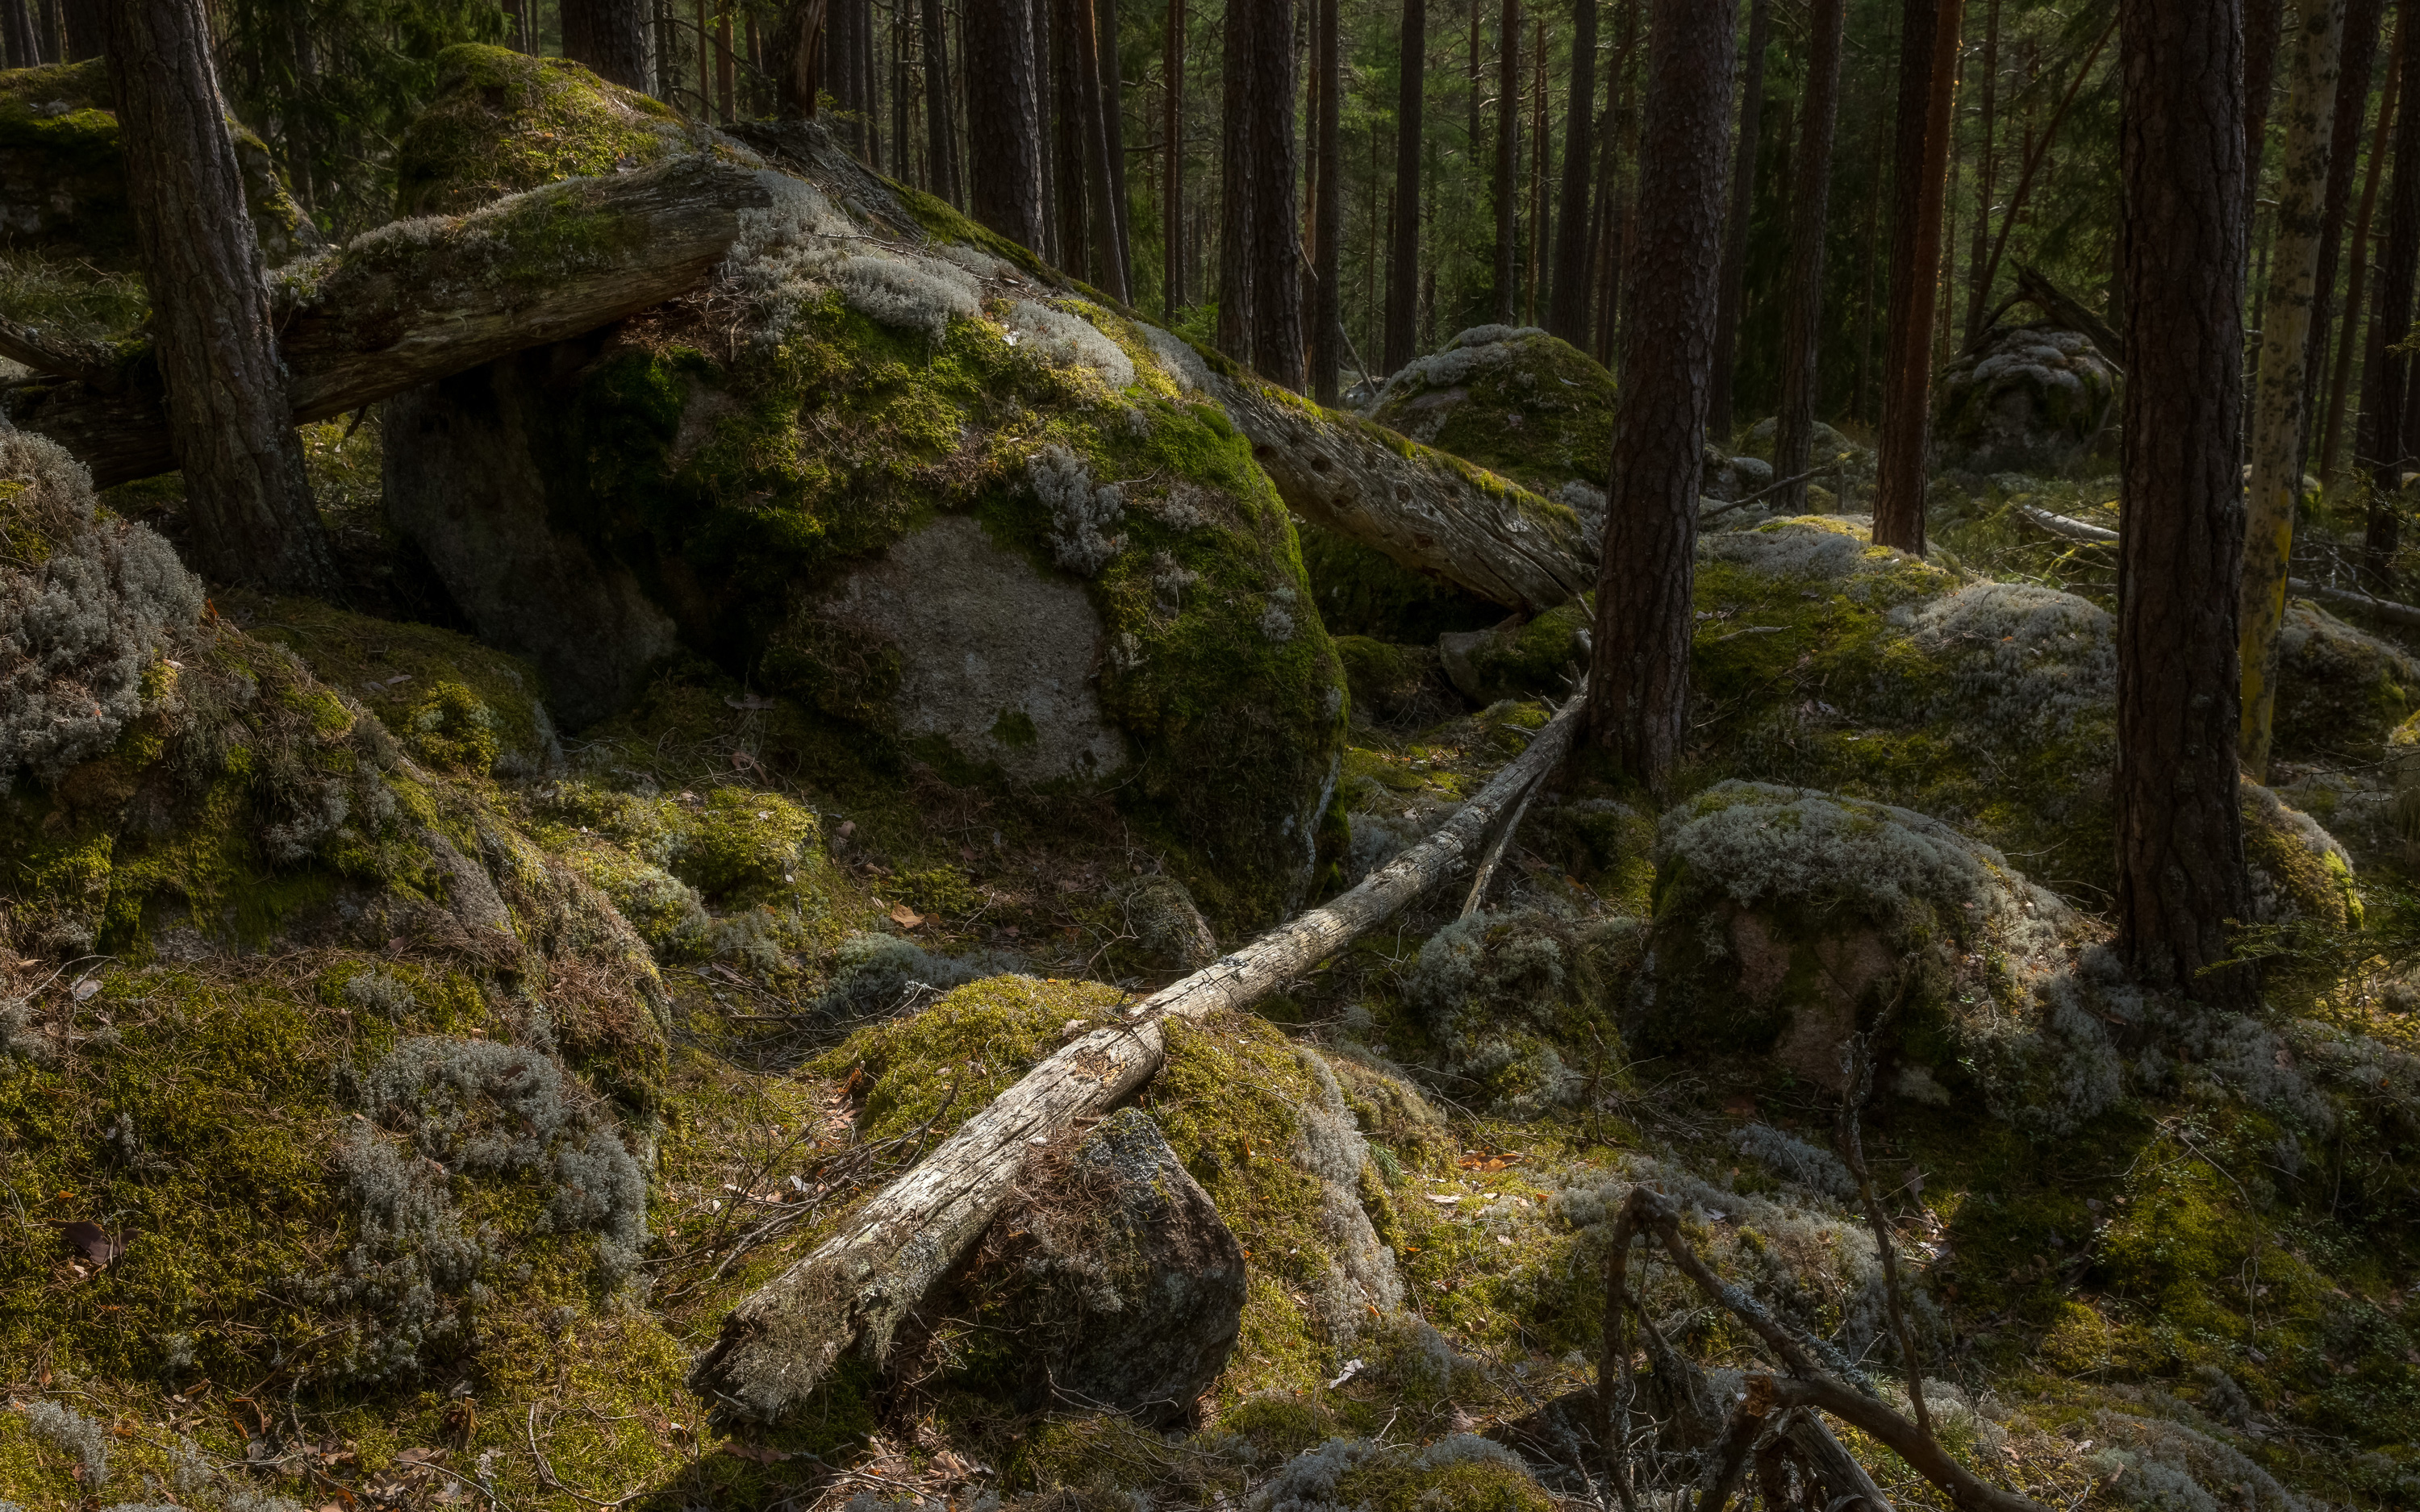 Urskog med mossiga stenar och tallar